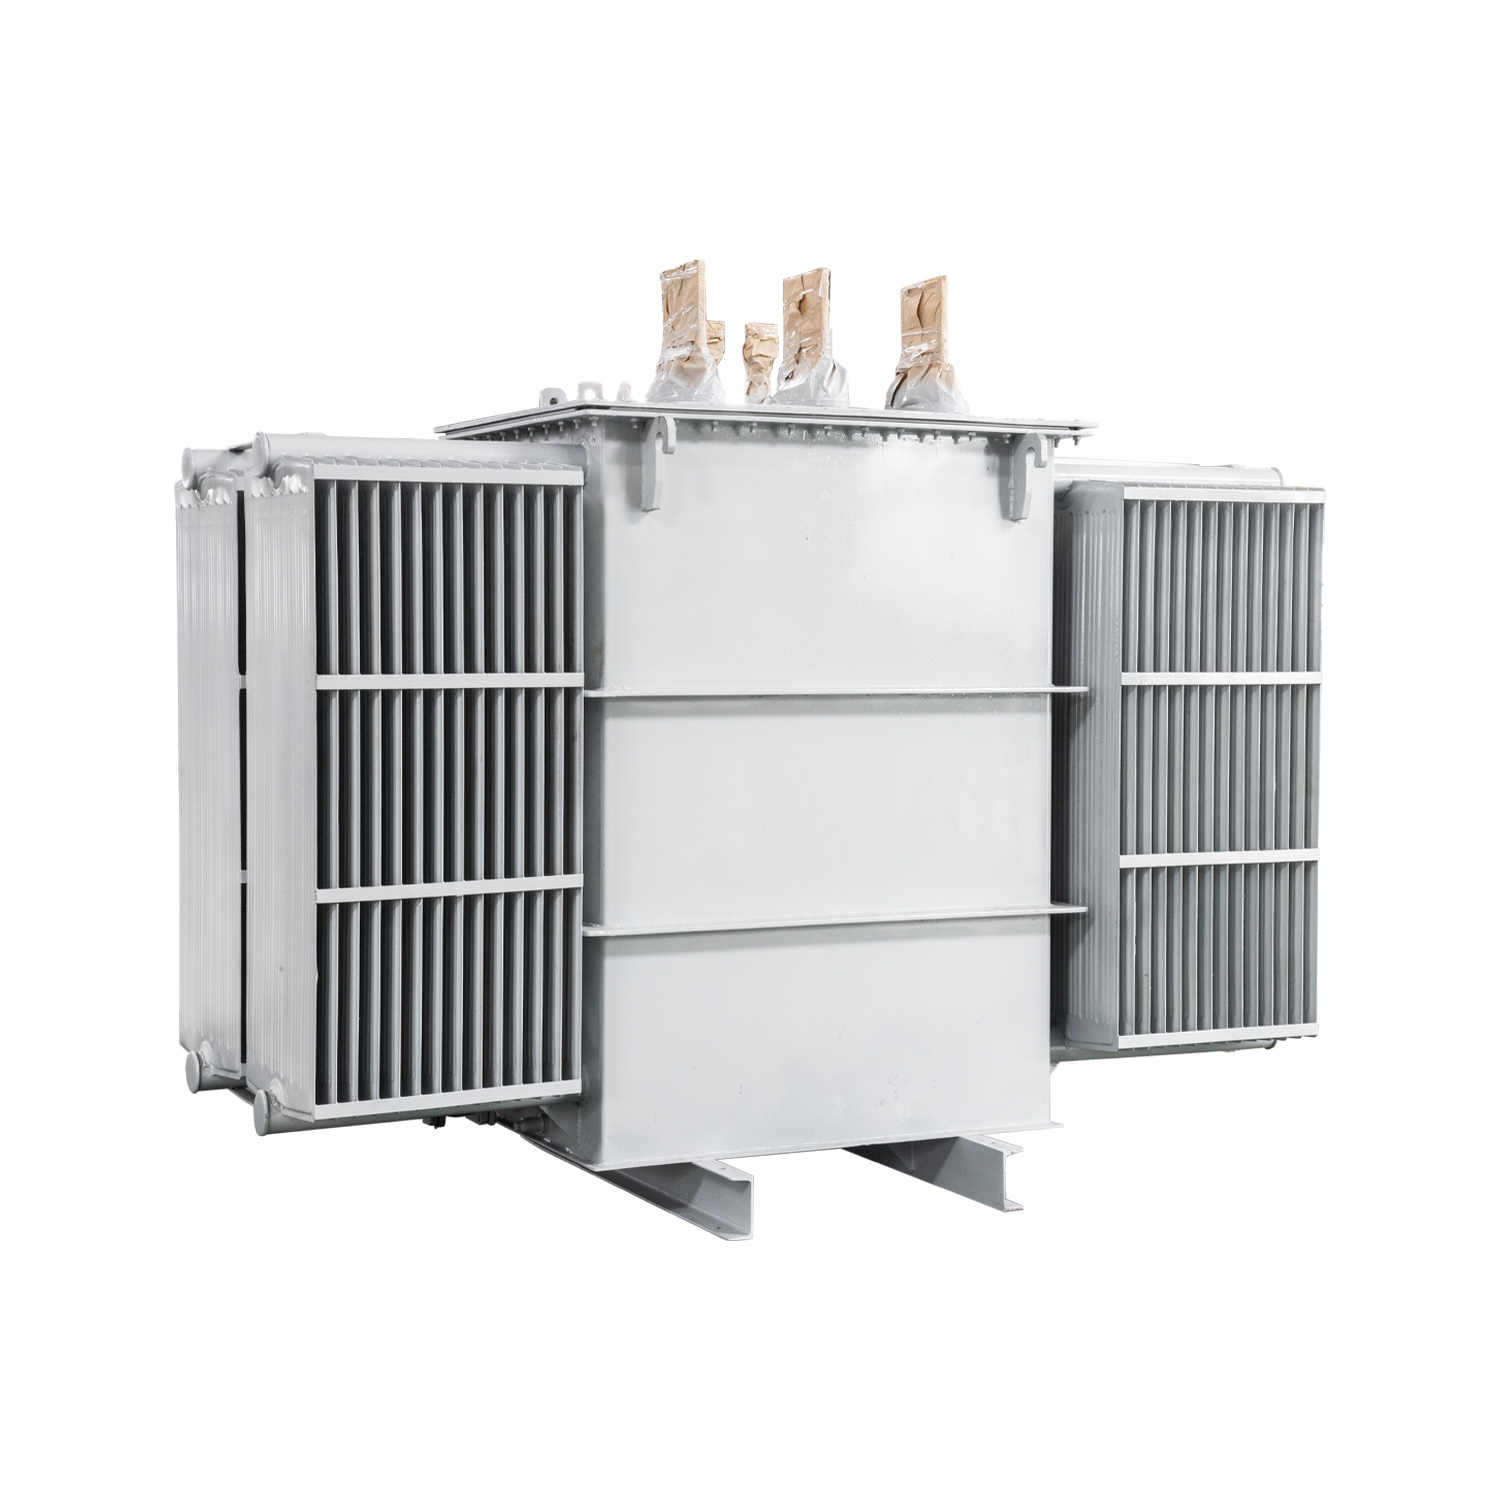 CE 800 kVA vertical furnace magnetic voltage regulator